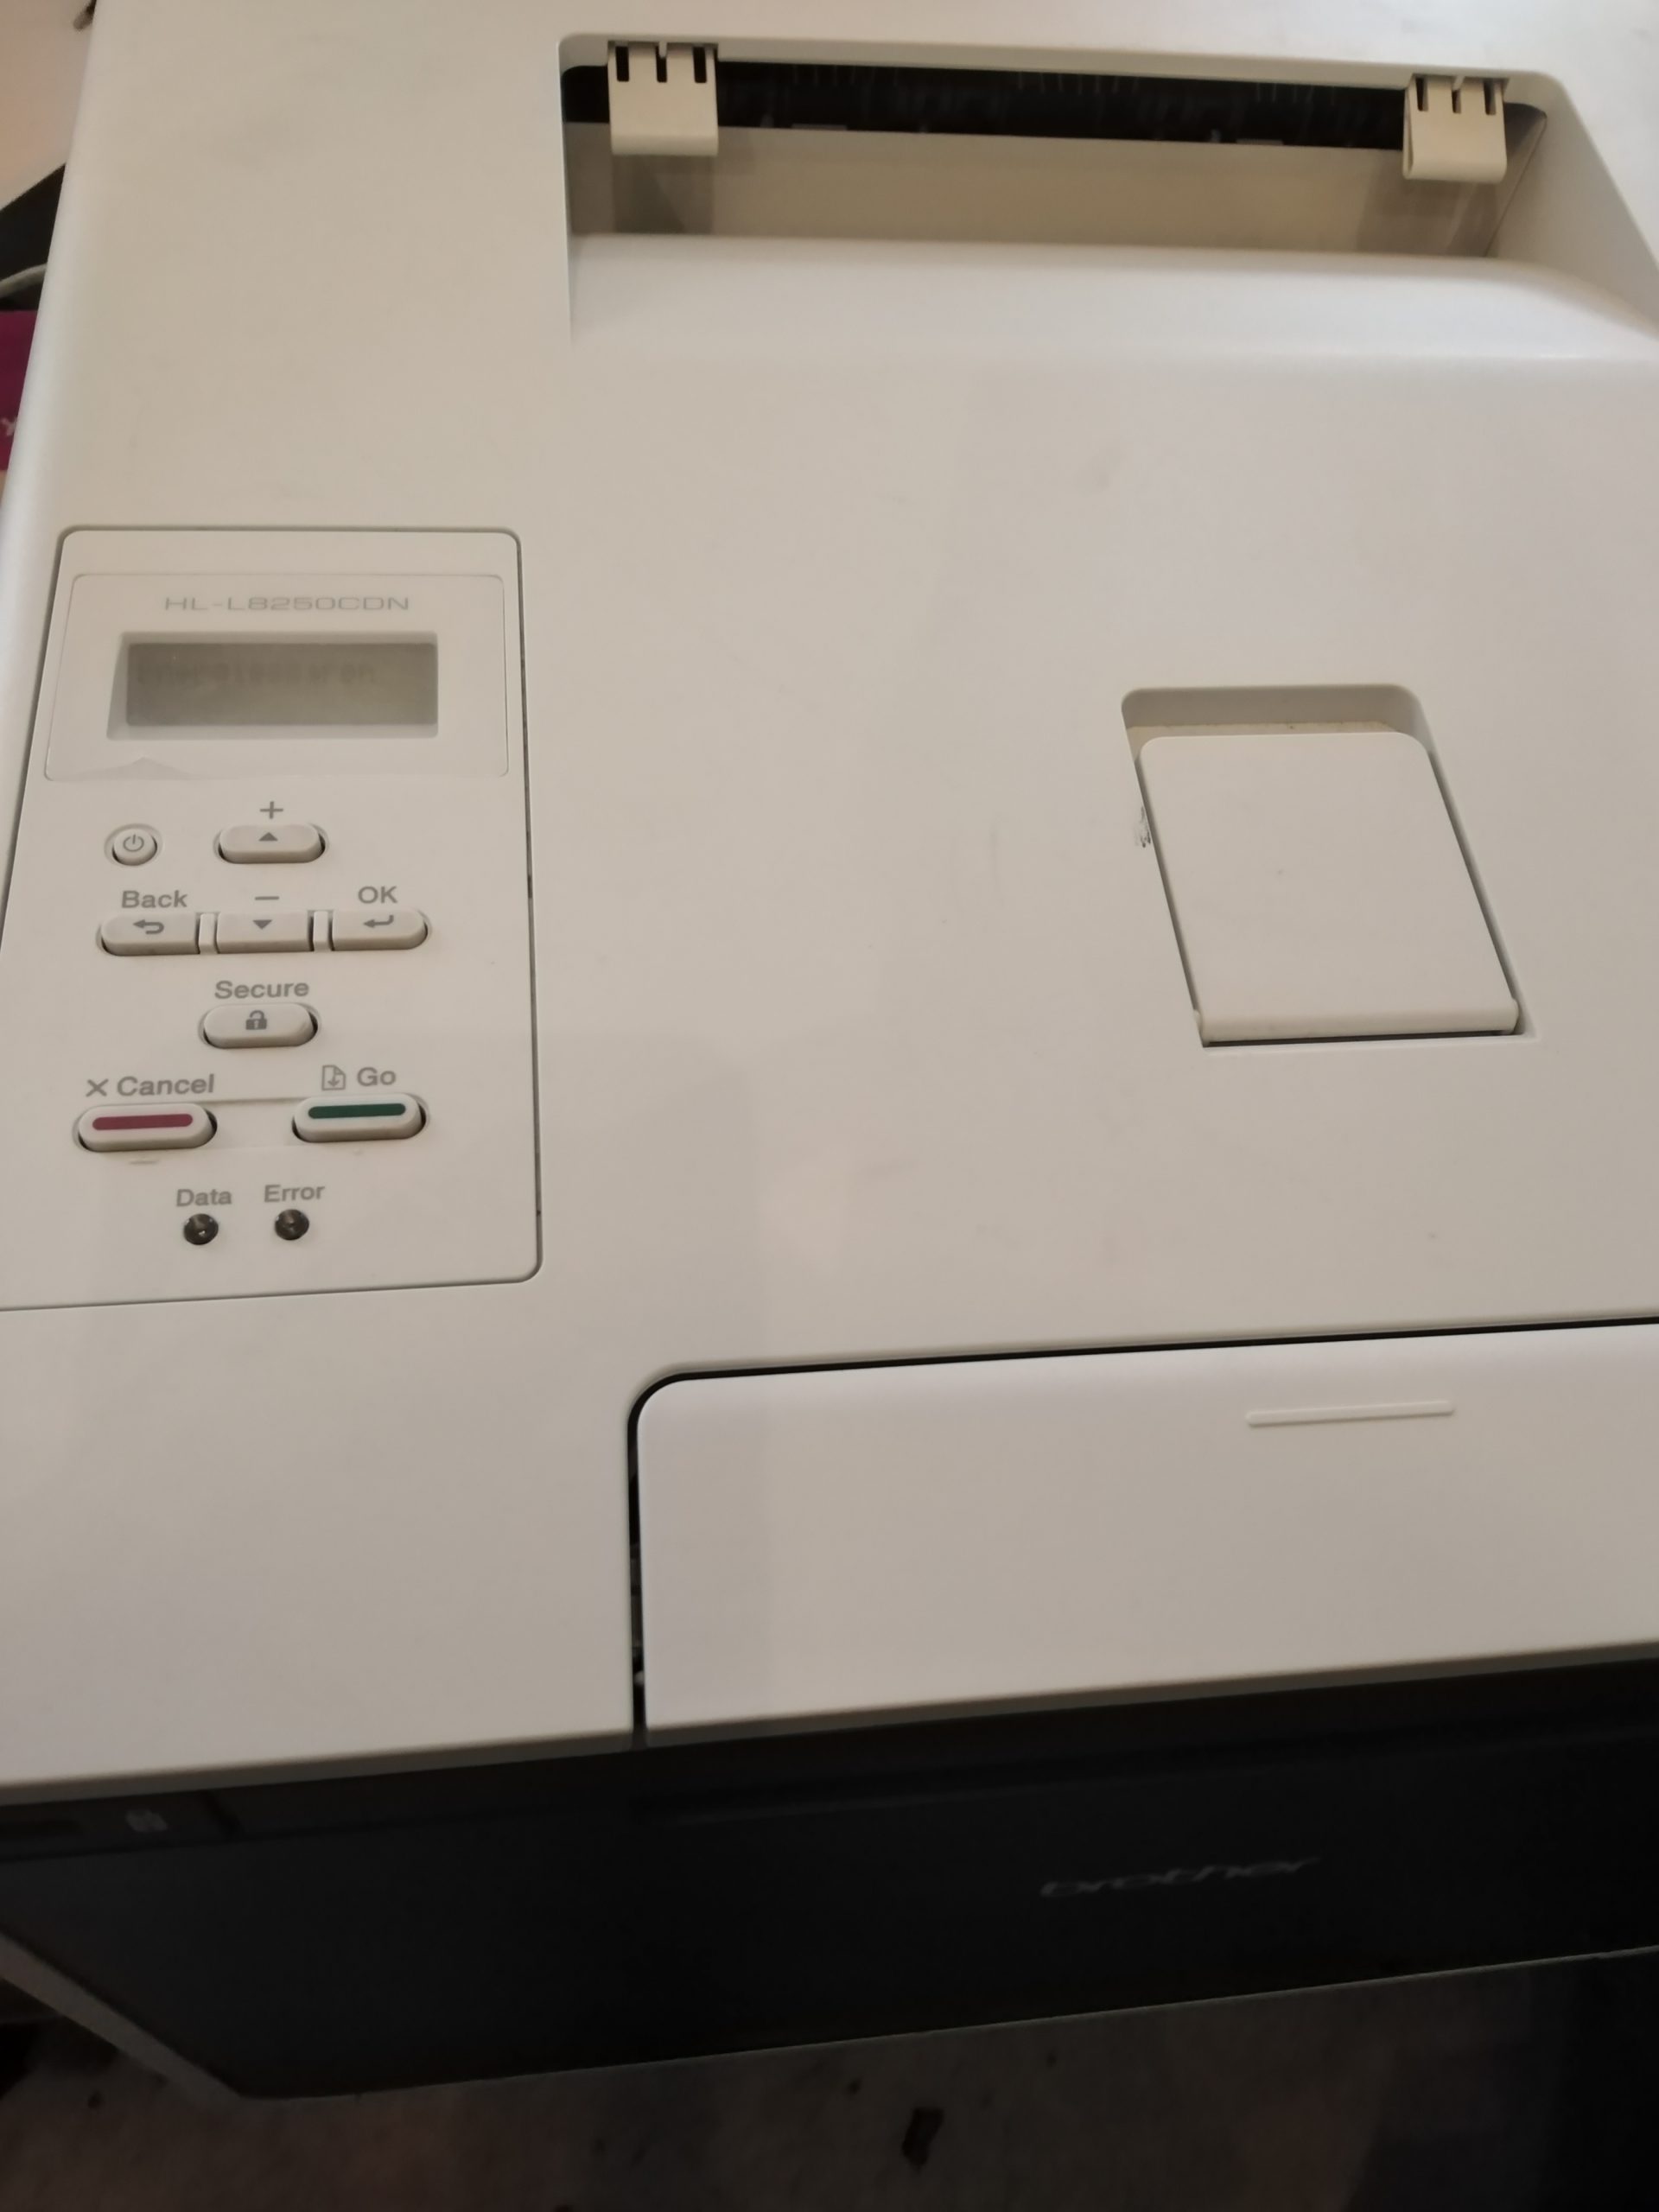 Worauf Sie beim Kauf eines gebrauchten Druckers achten sollten